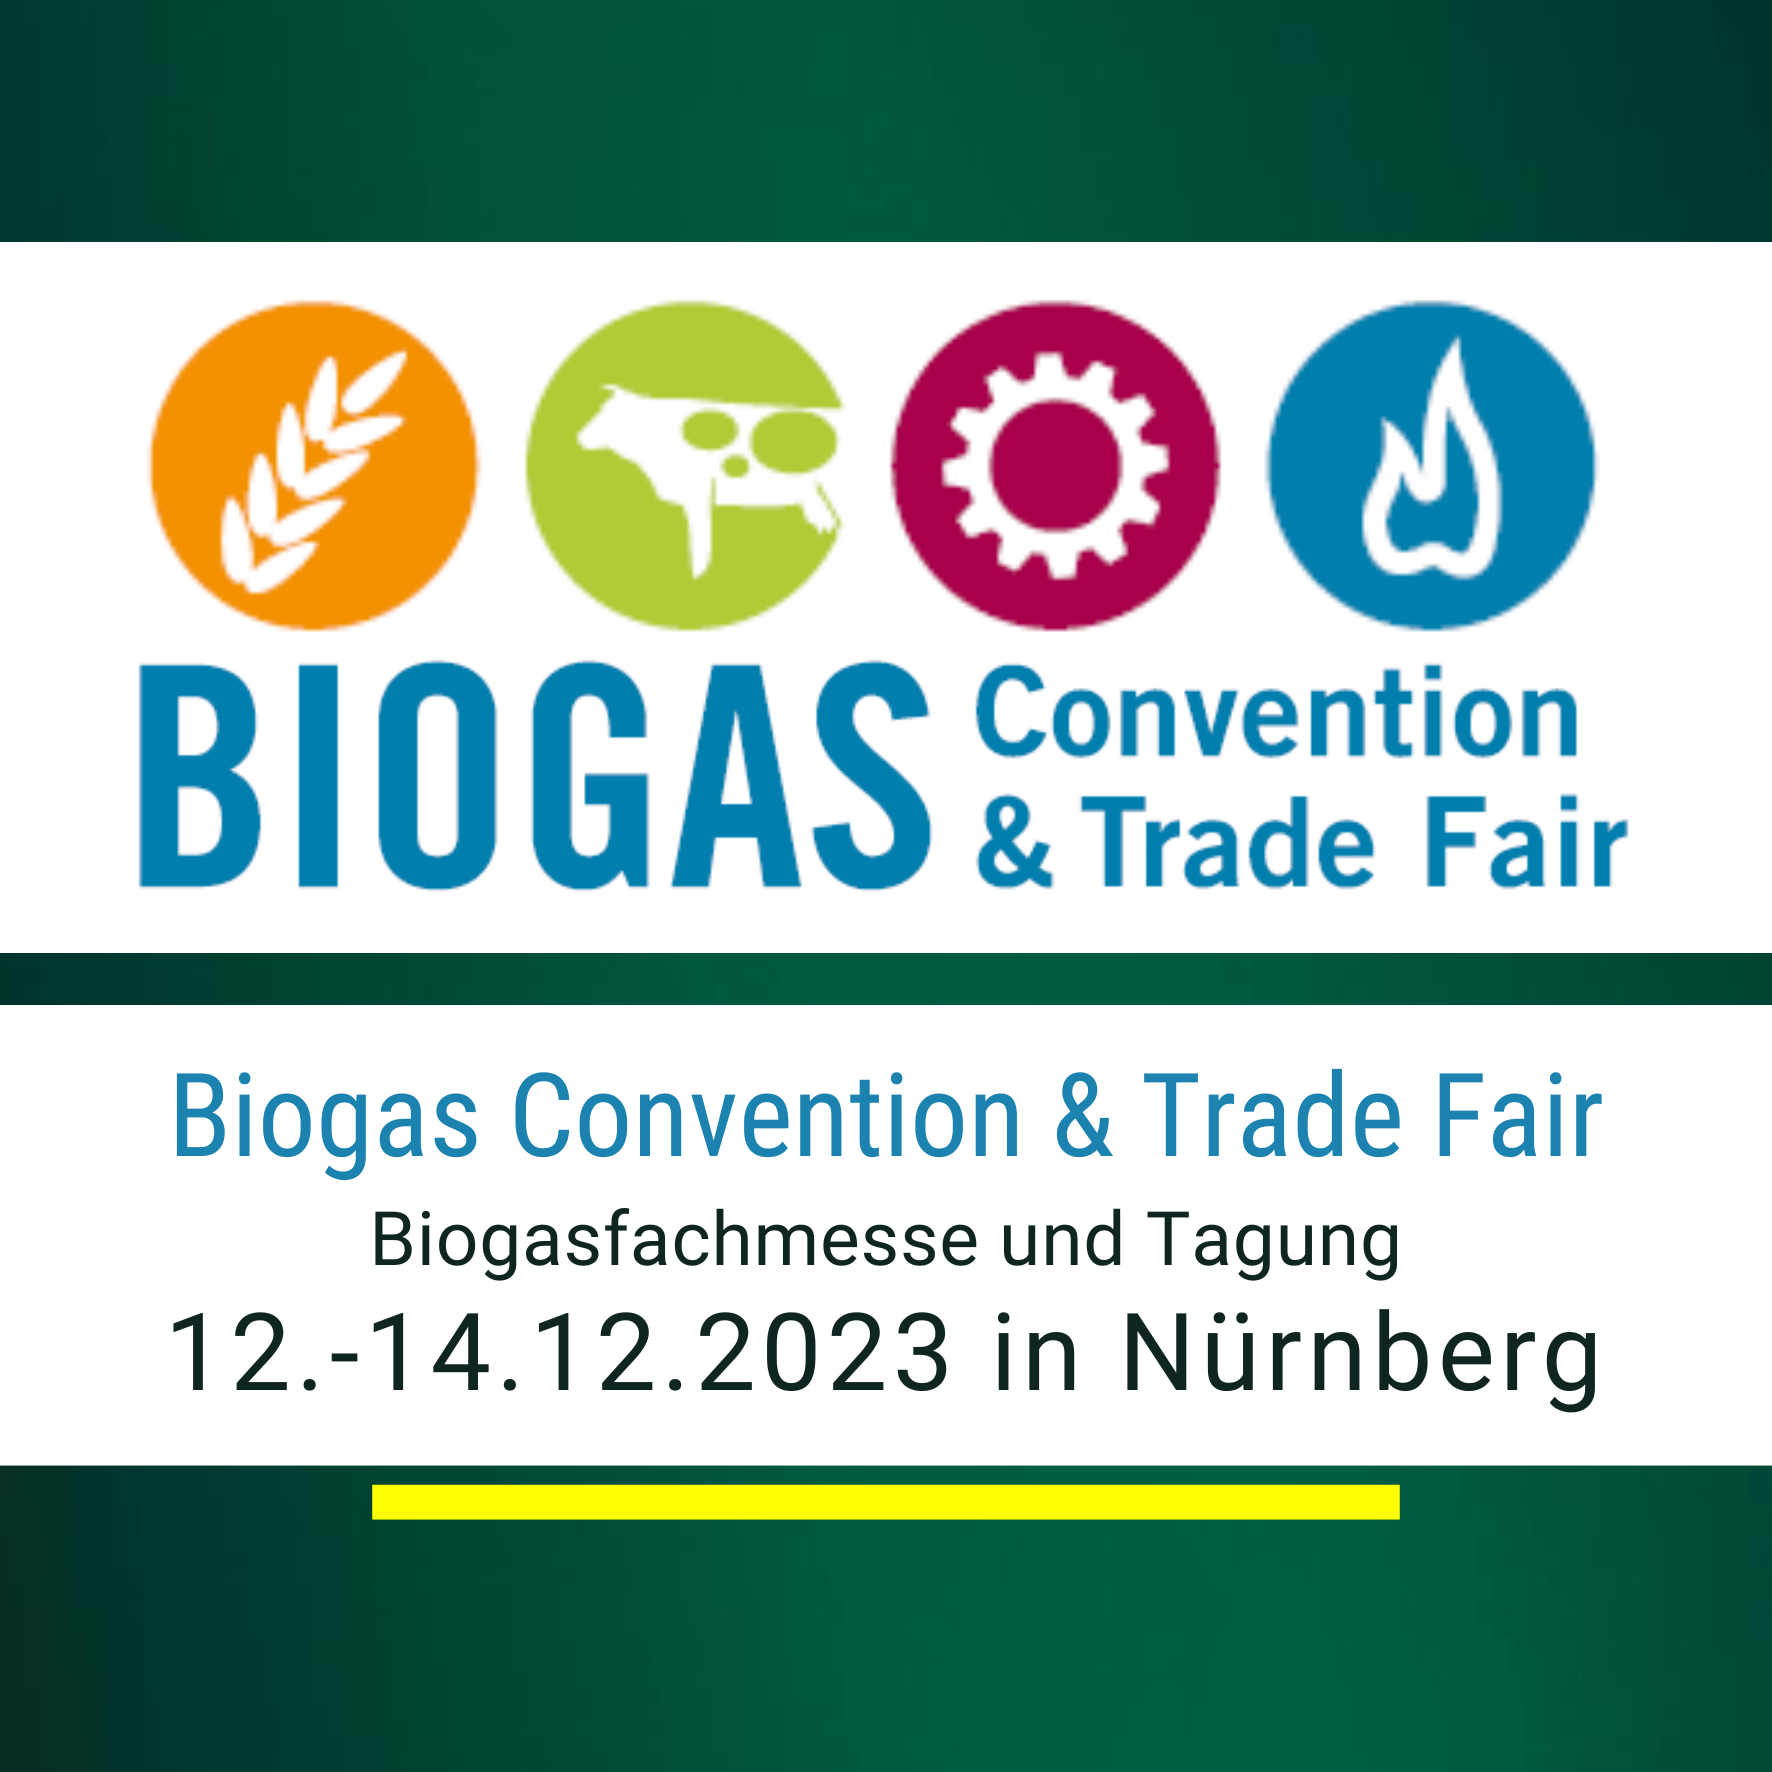 2023-12-12bis14 Biogas Convention Nuernberg